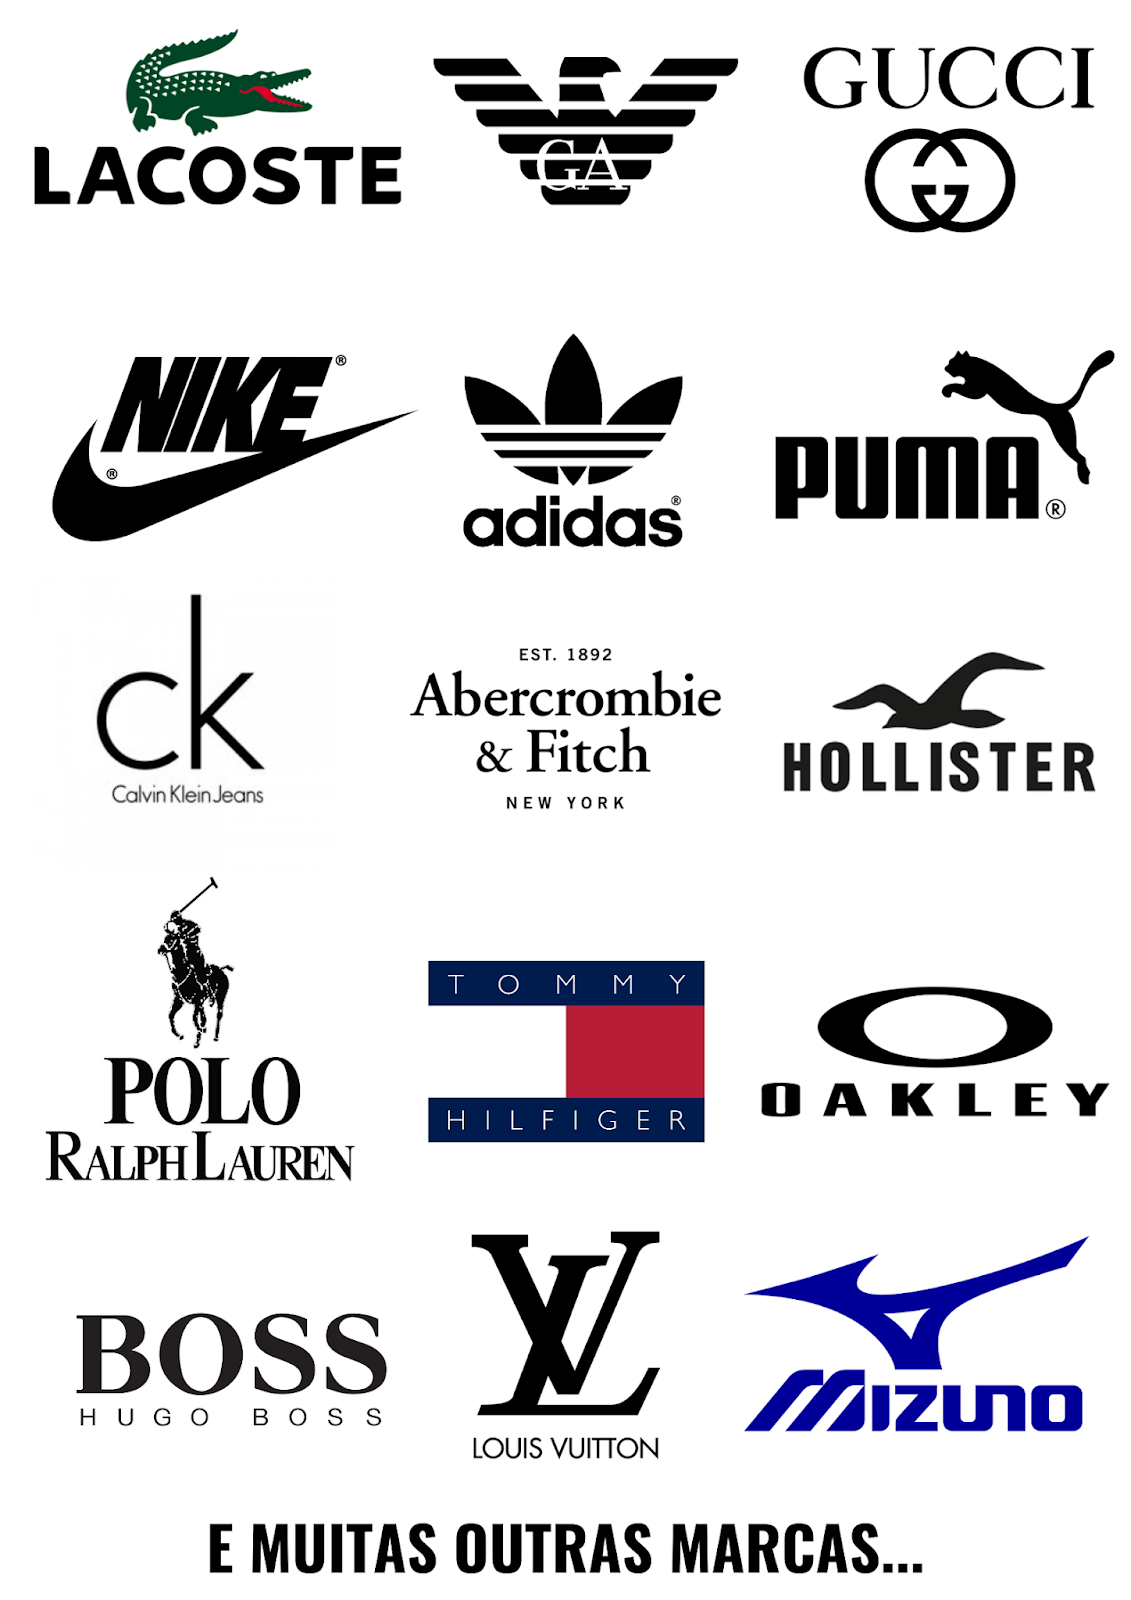 19 moda fitness Logo ideas